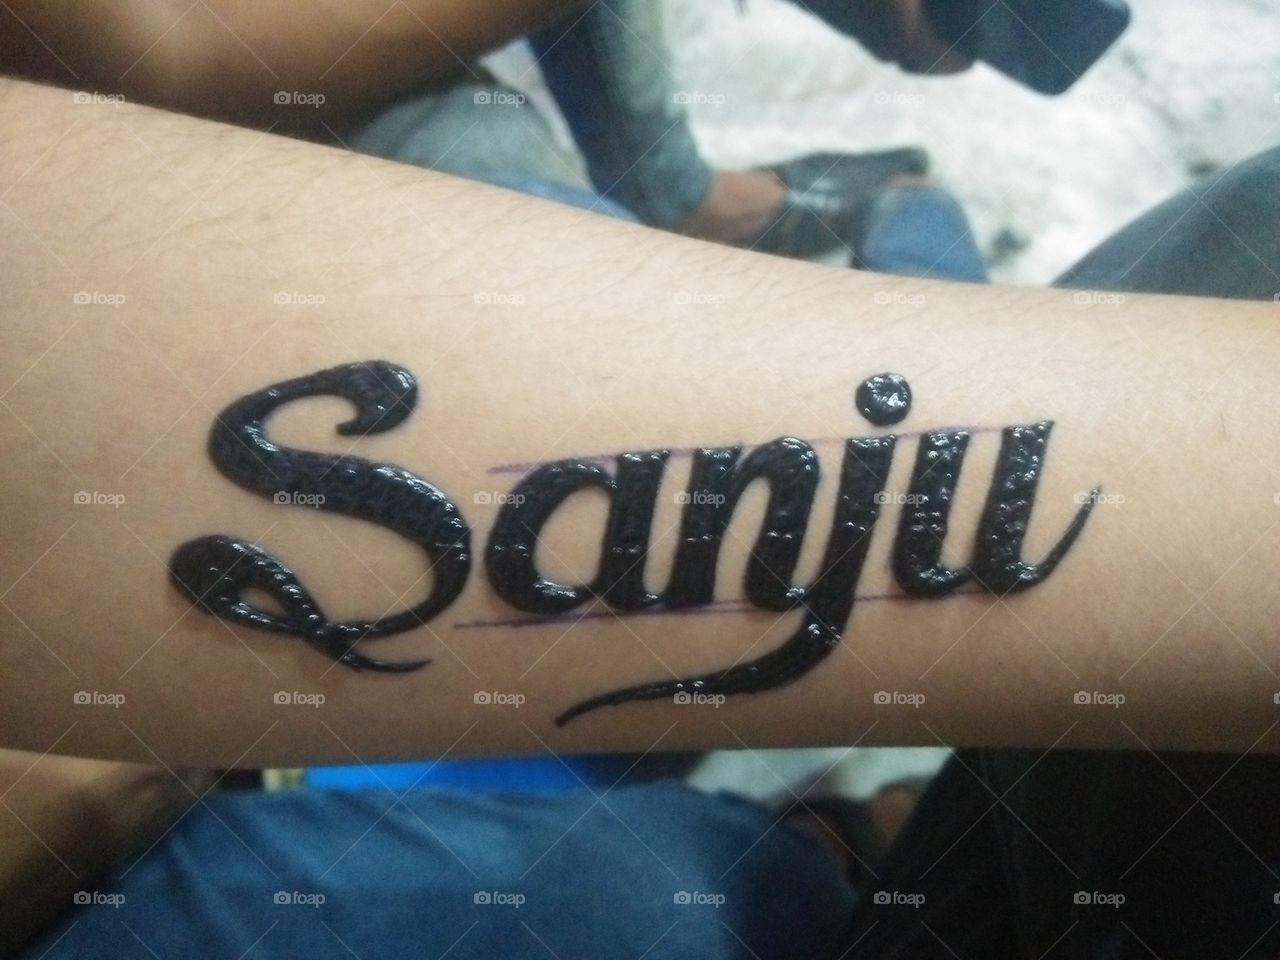 Sanju Name Tattoo On Hand - 1280x960 Wallpaper 